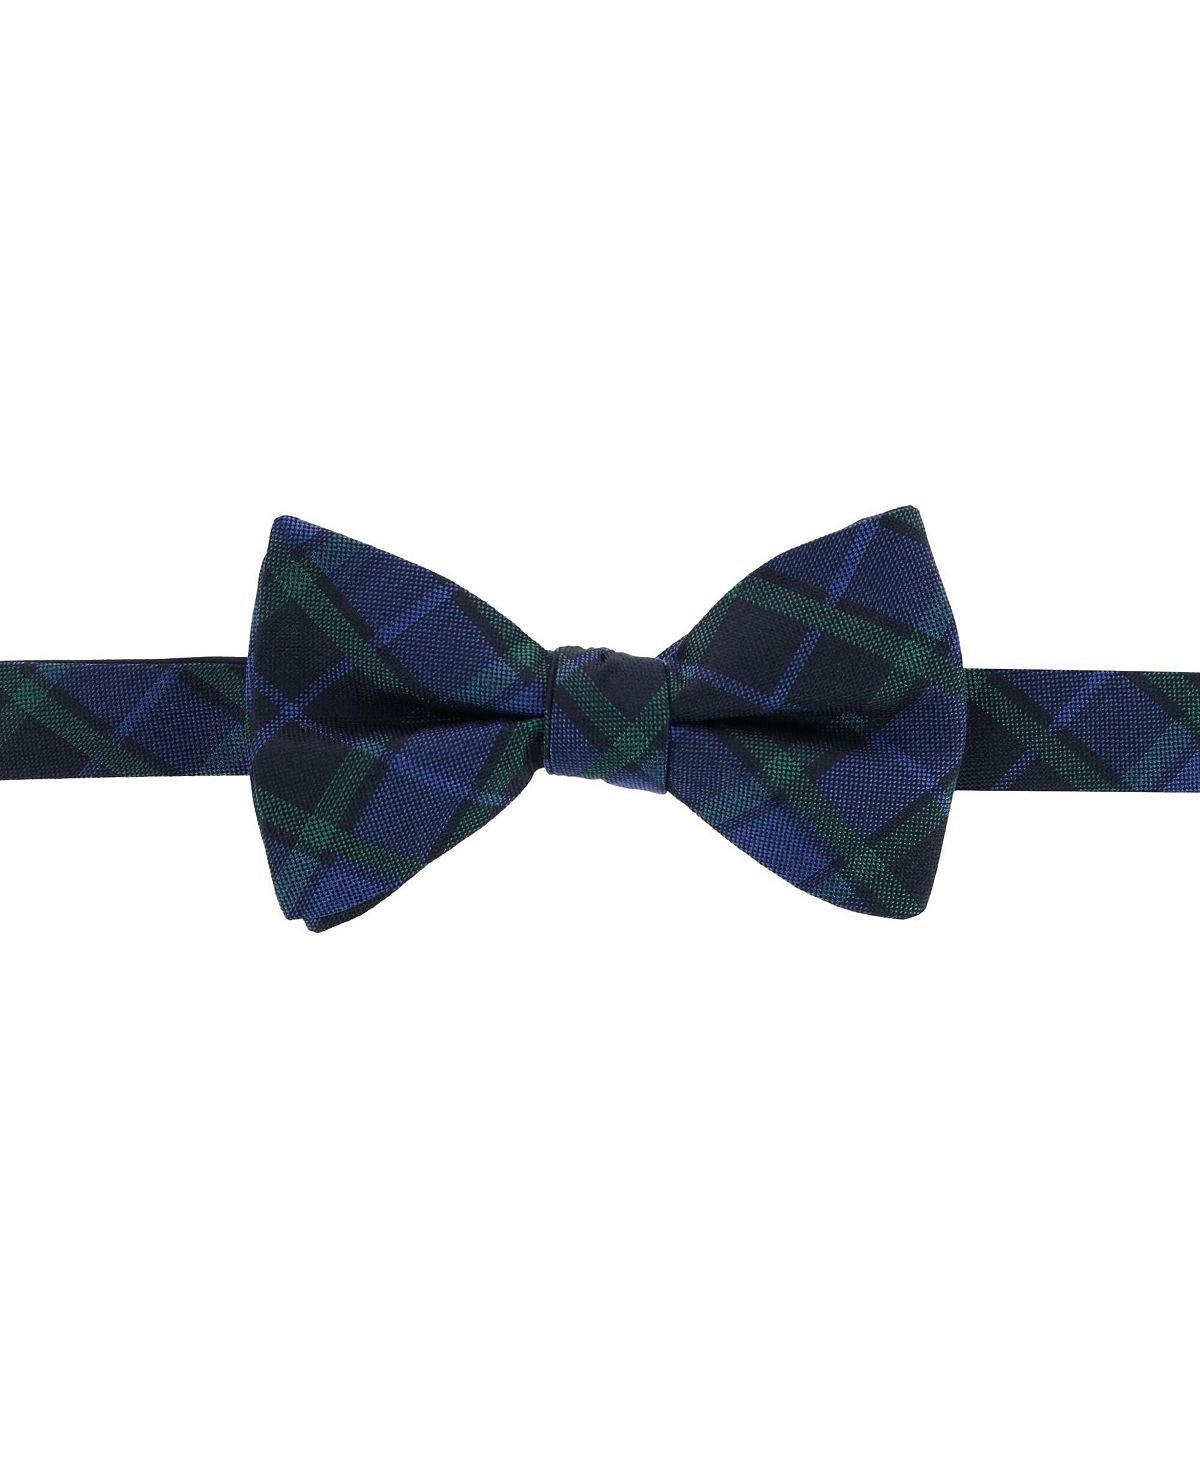 цена Зелено-темно-синий шелковый галстук-бабочка в клетку Ives Blackwatch TRAFALGAR